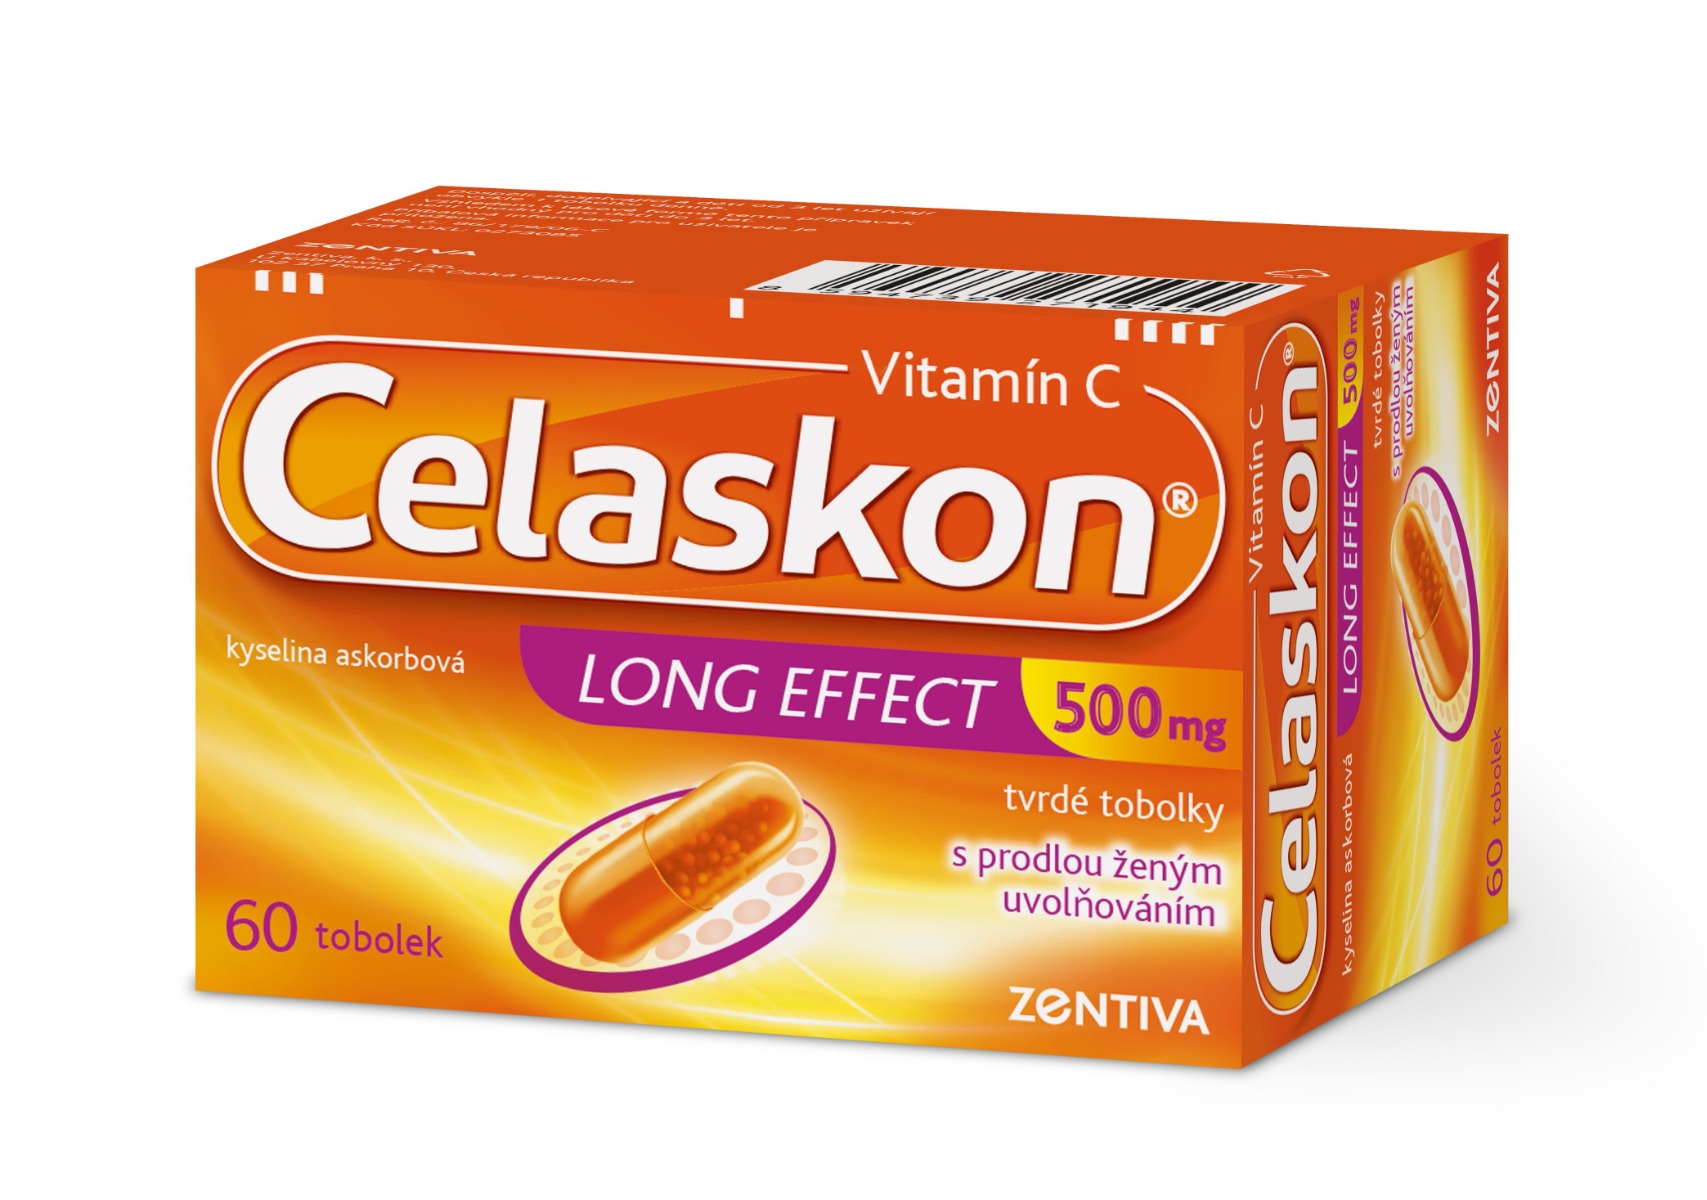 Celaskon Long Effect 500 mg 60 tobolek Celaskon